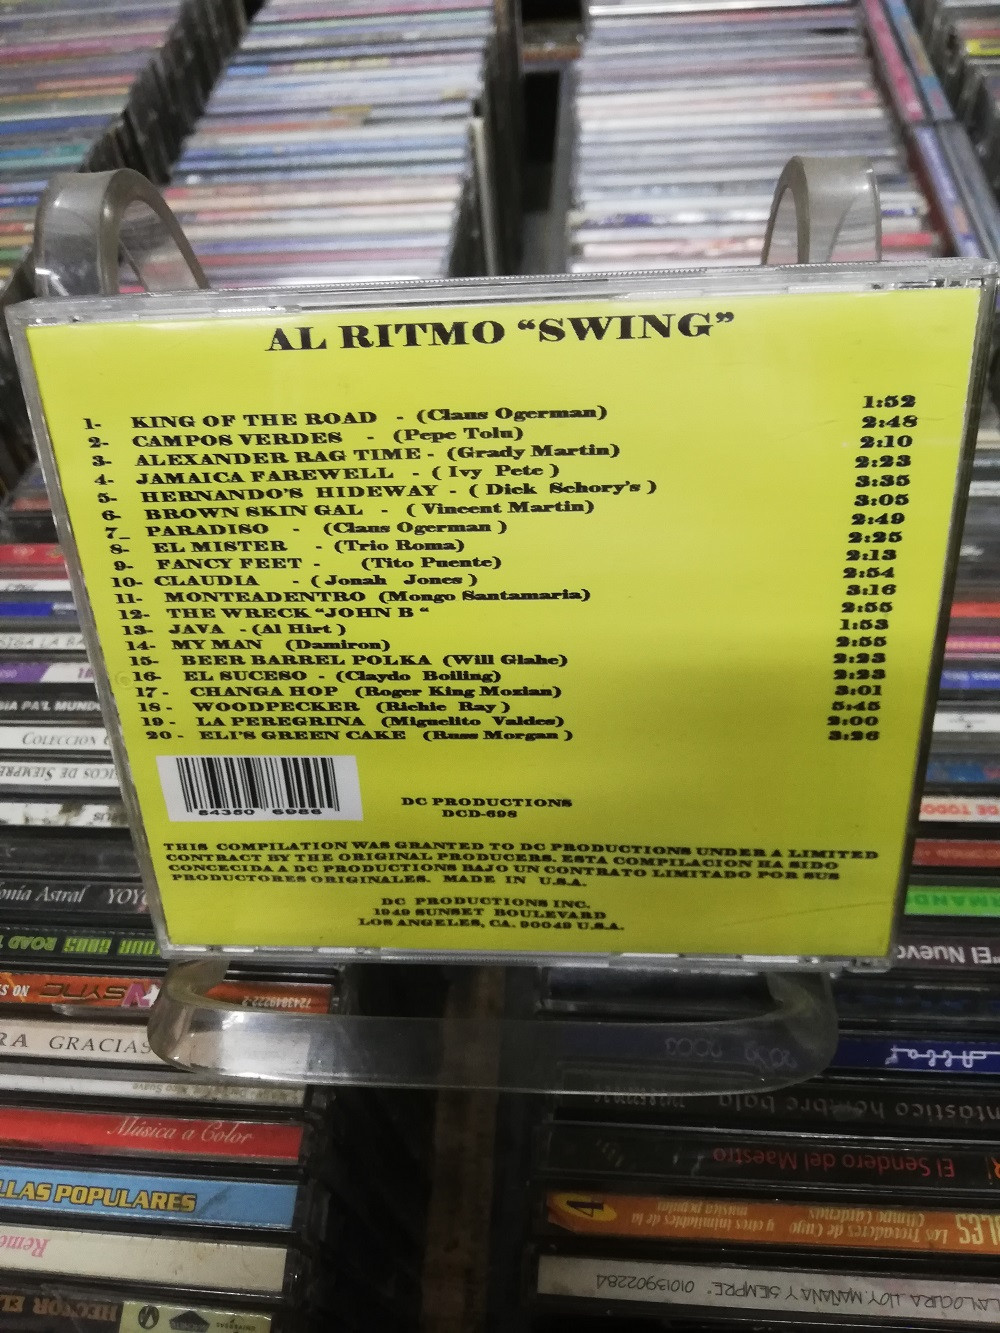 Imagen CD AL RITMO "SWING" 2